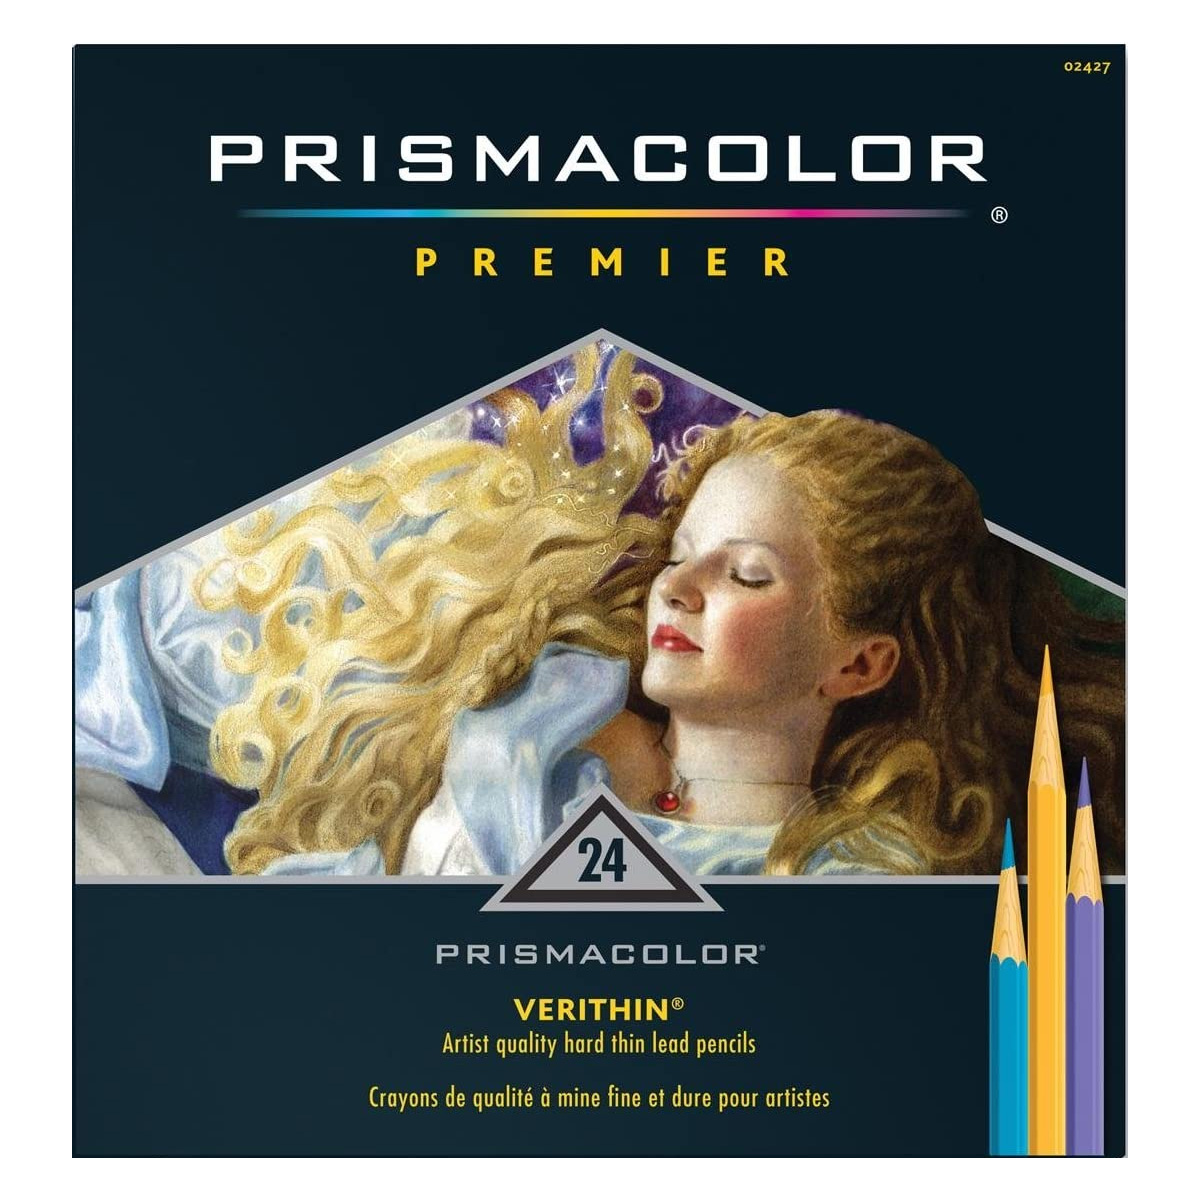 Prismacolor Premier Colored Pencils 24 Set